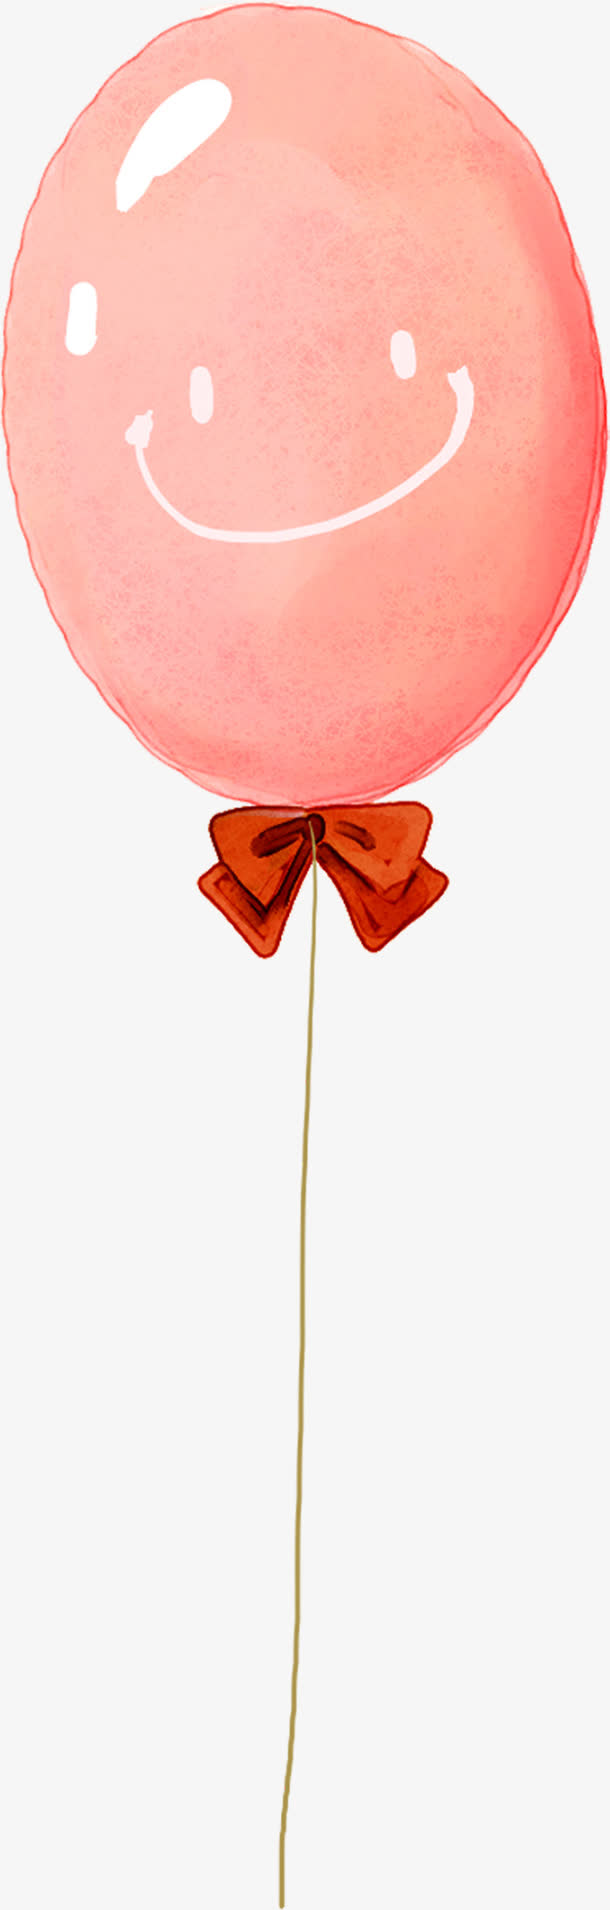 高清手绘卡通粉色气球